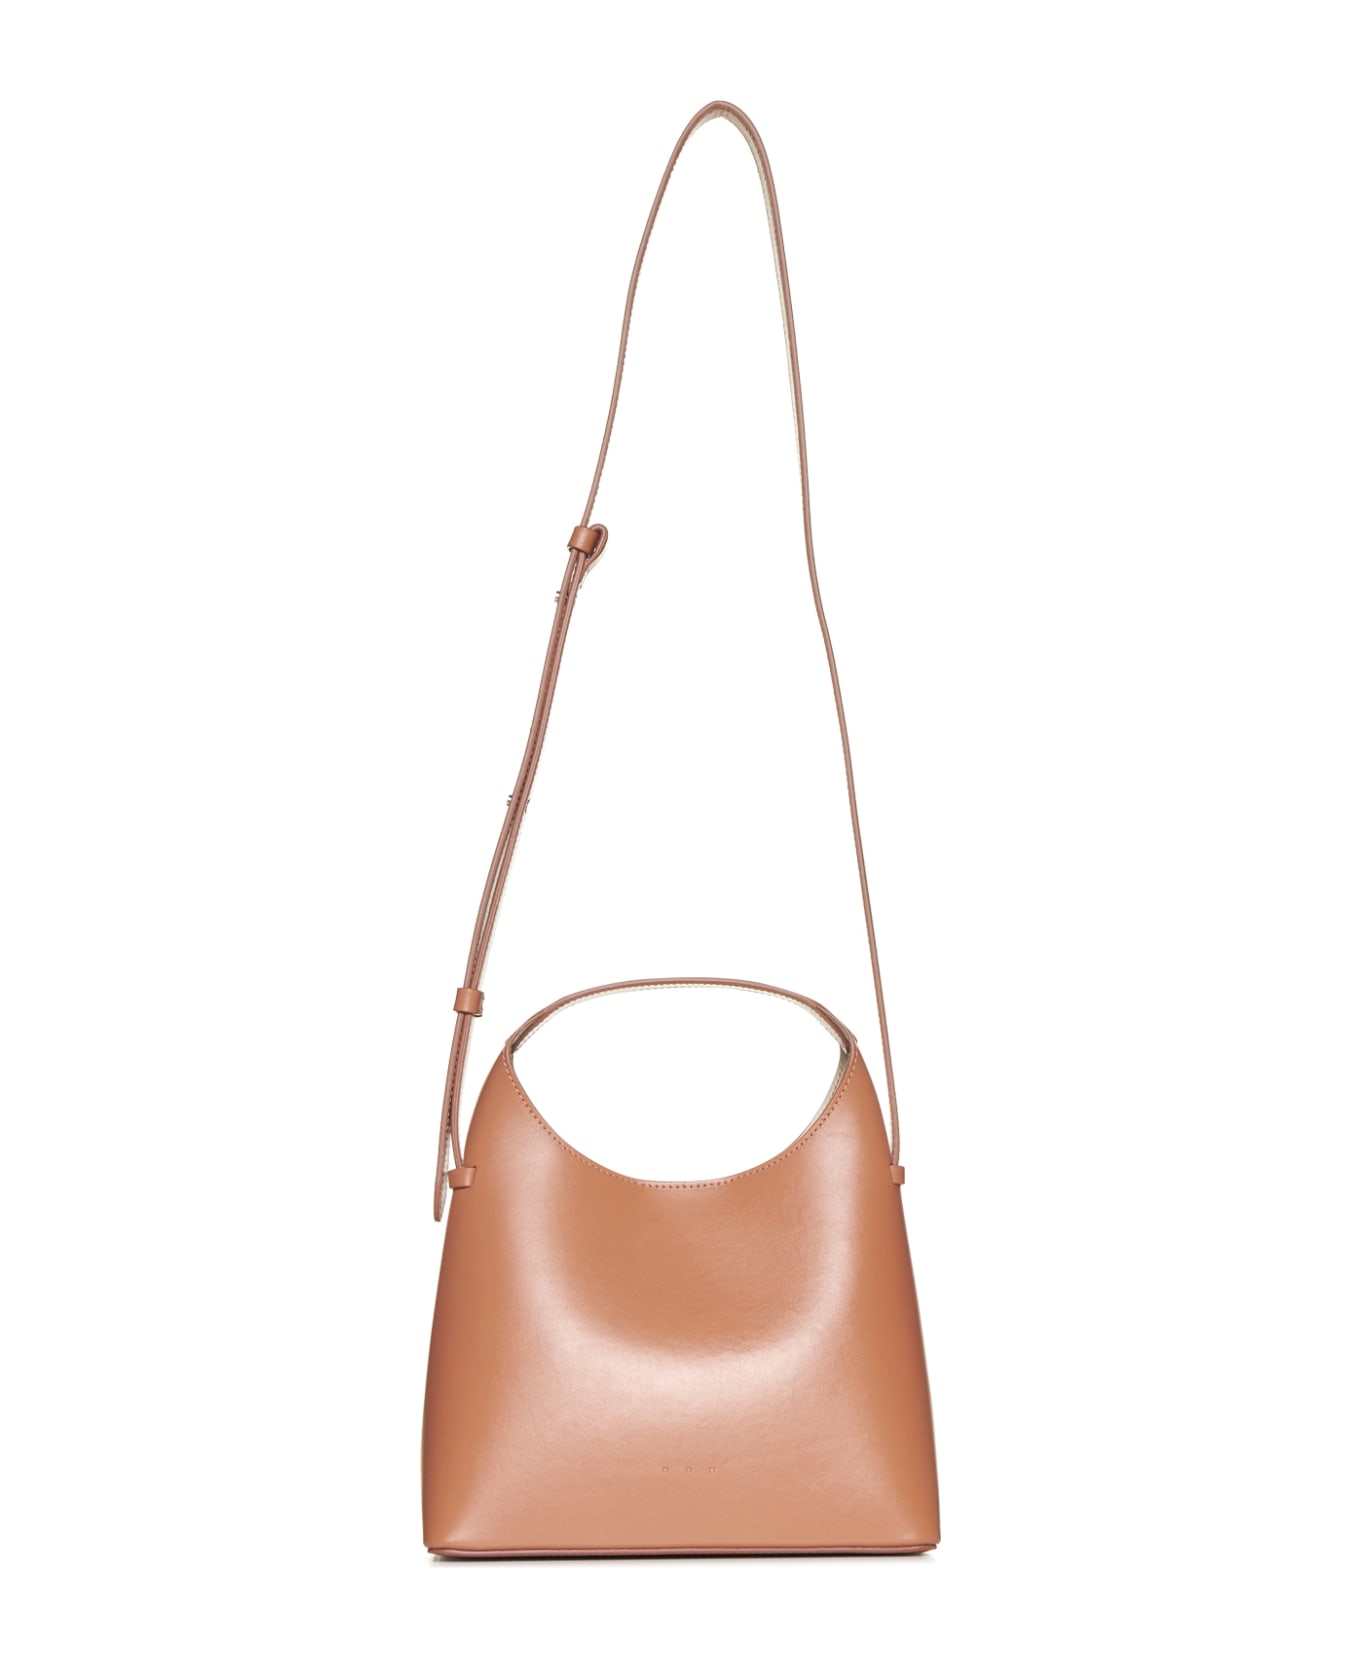 Aesther Ekme Shoulder Bag - Copper tan